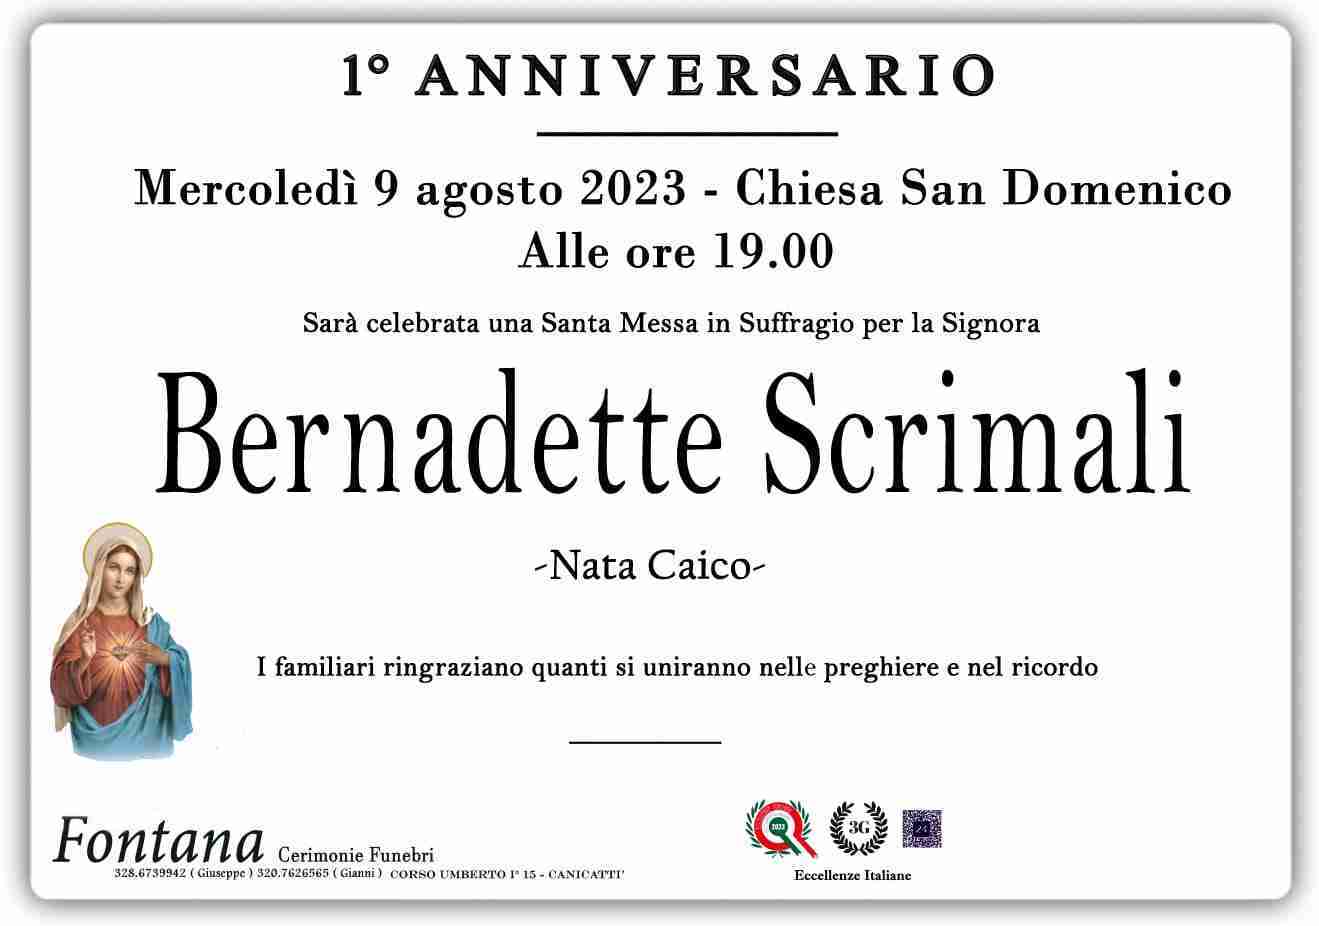 Bernadette Scrimali